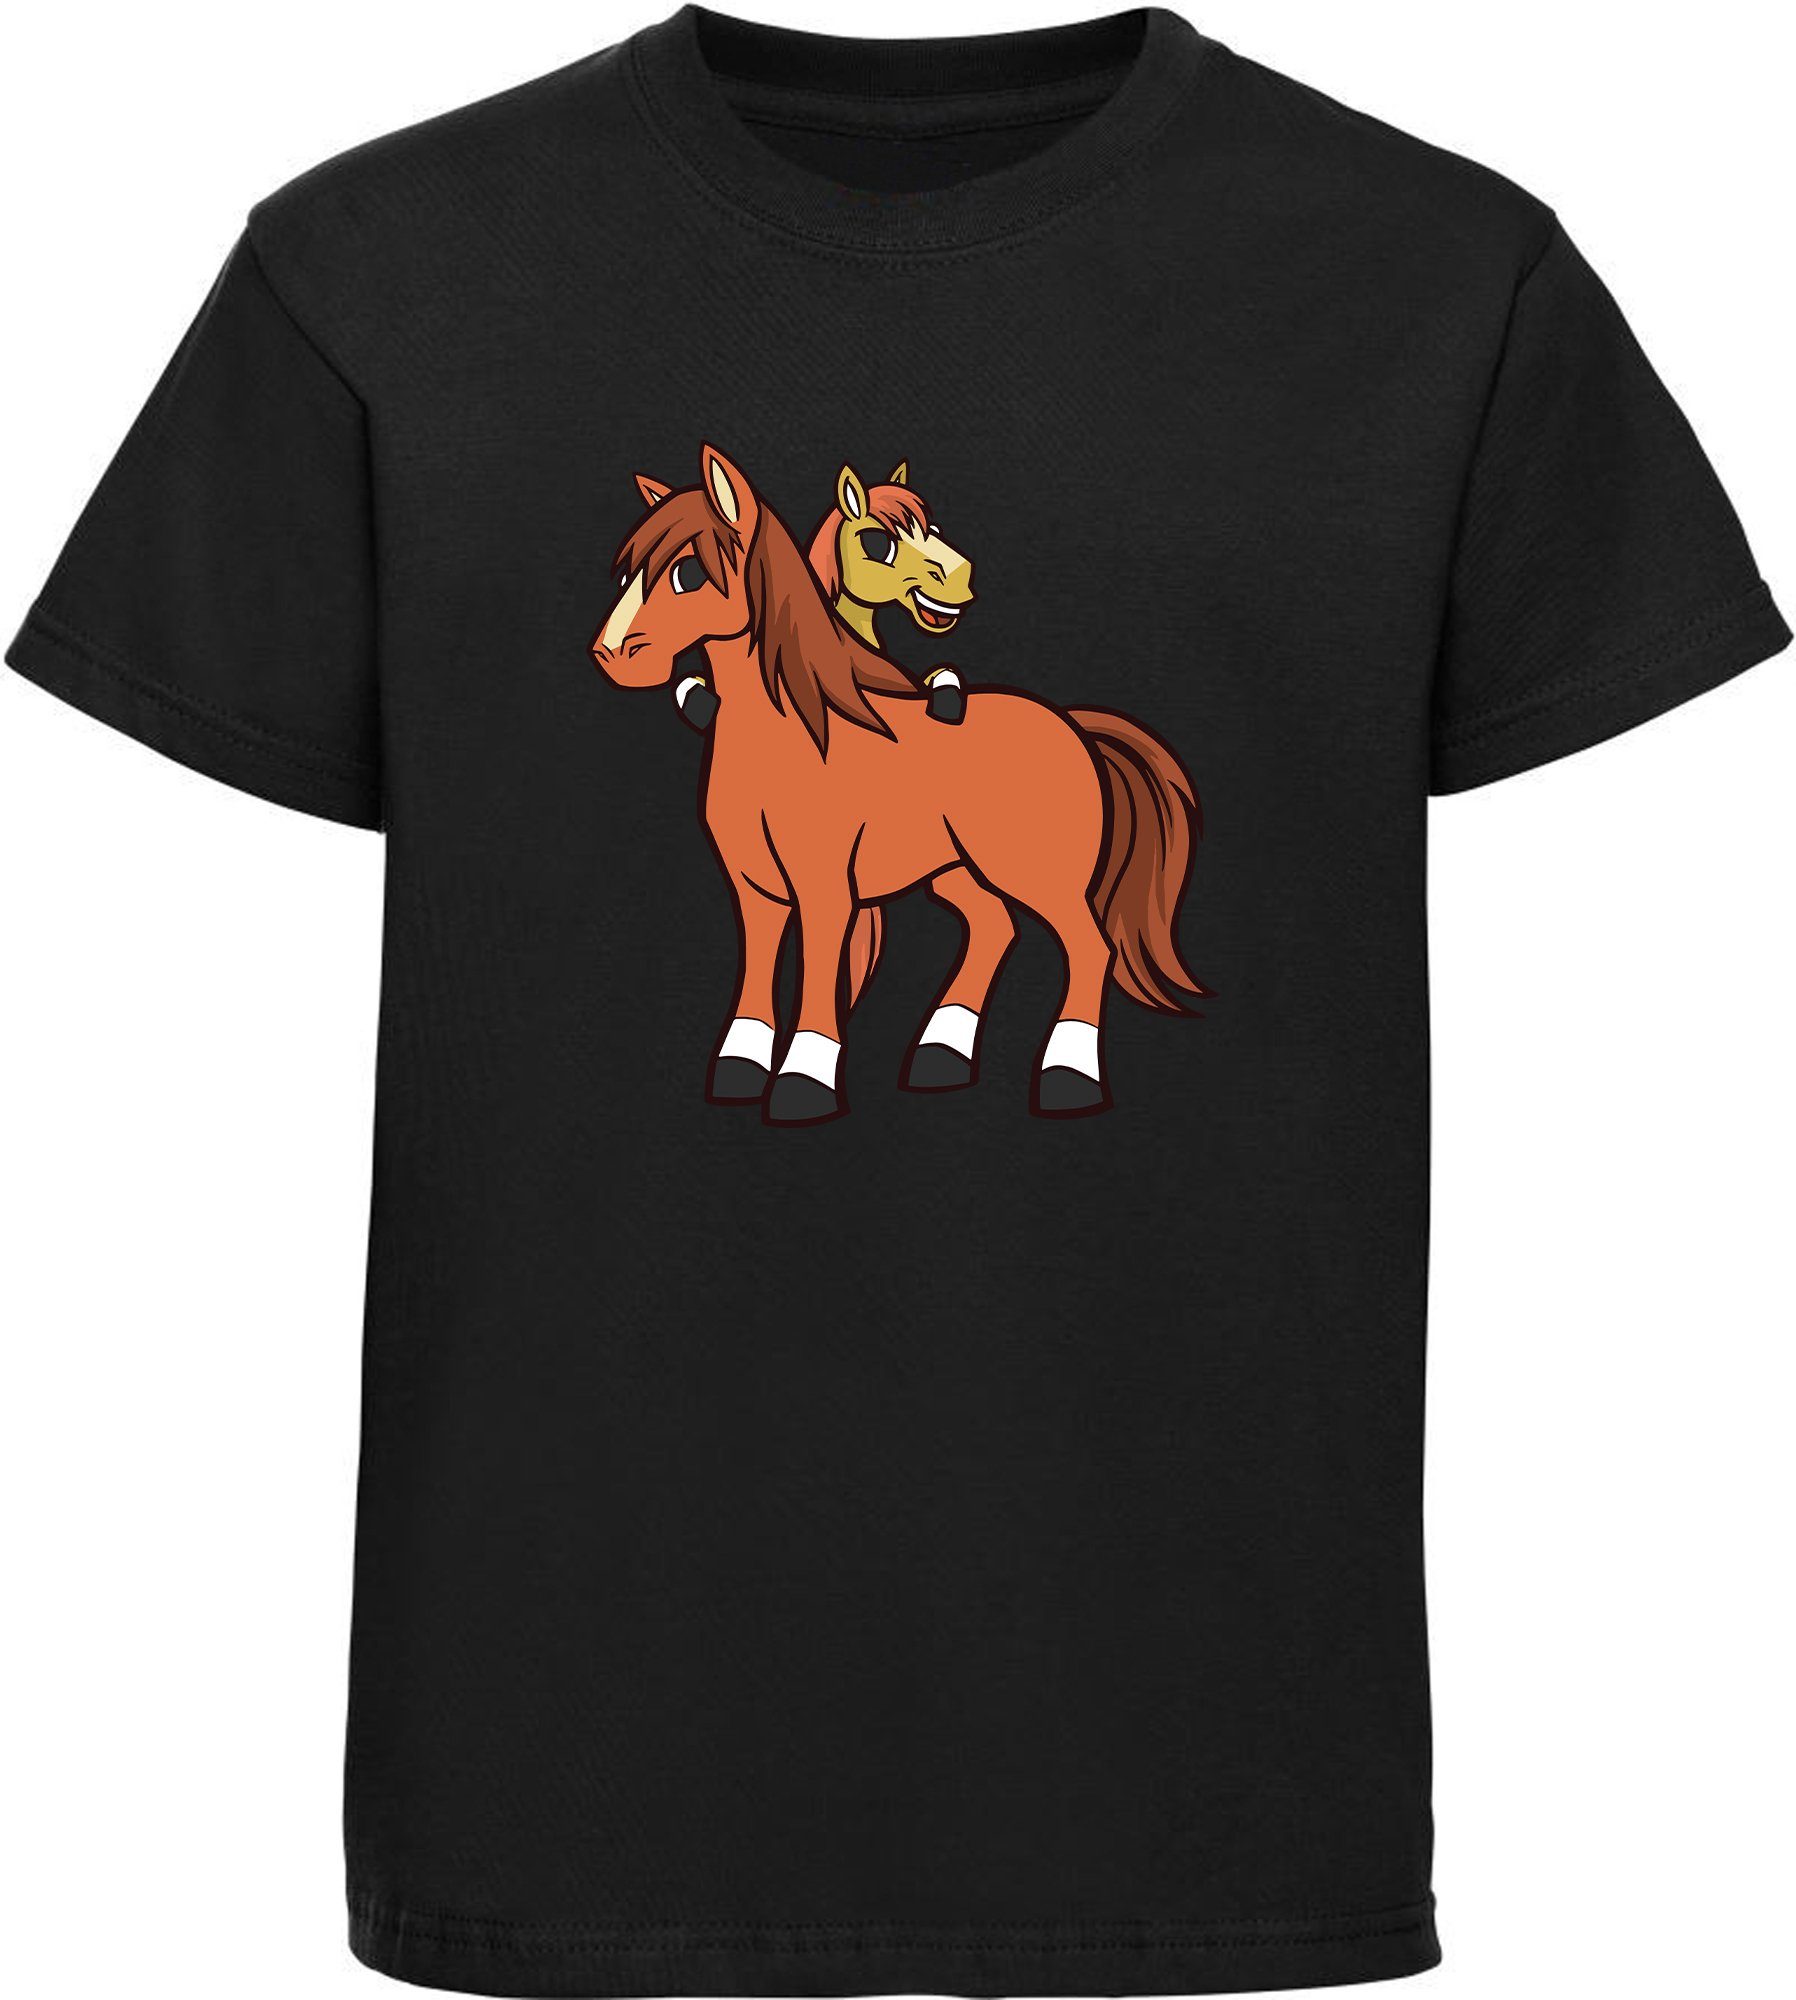 MyDesign24 T-Shirt Kinder Pferde Print Shirt bedruckt - 2 cartoon Pferde Baumwollshirt mit Aufdruck, i251 schwarz